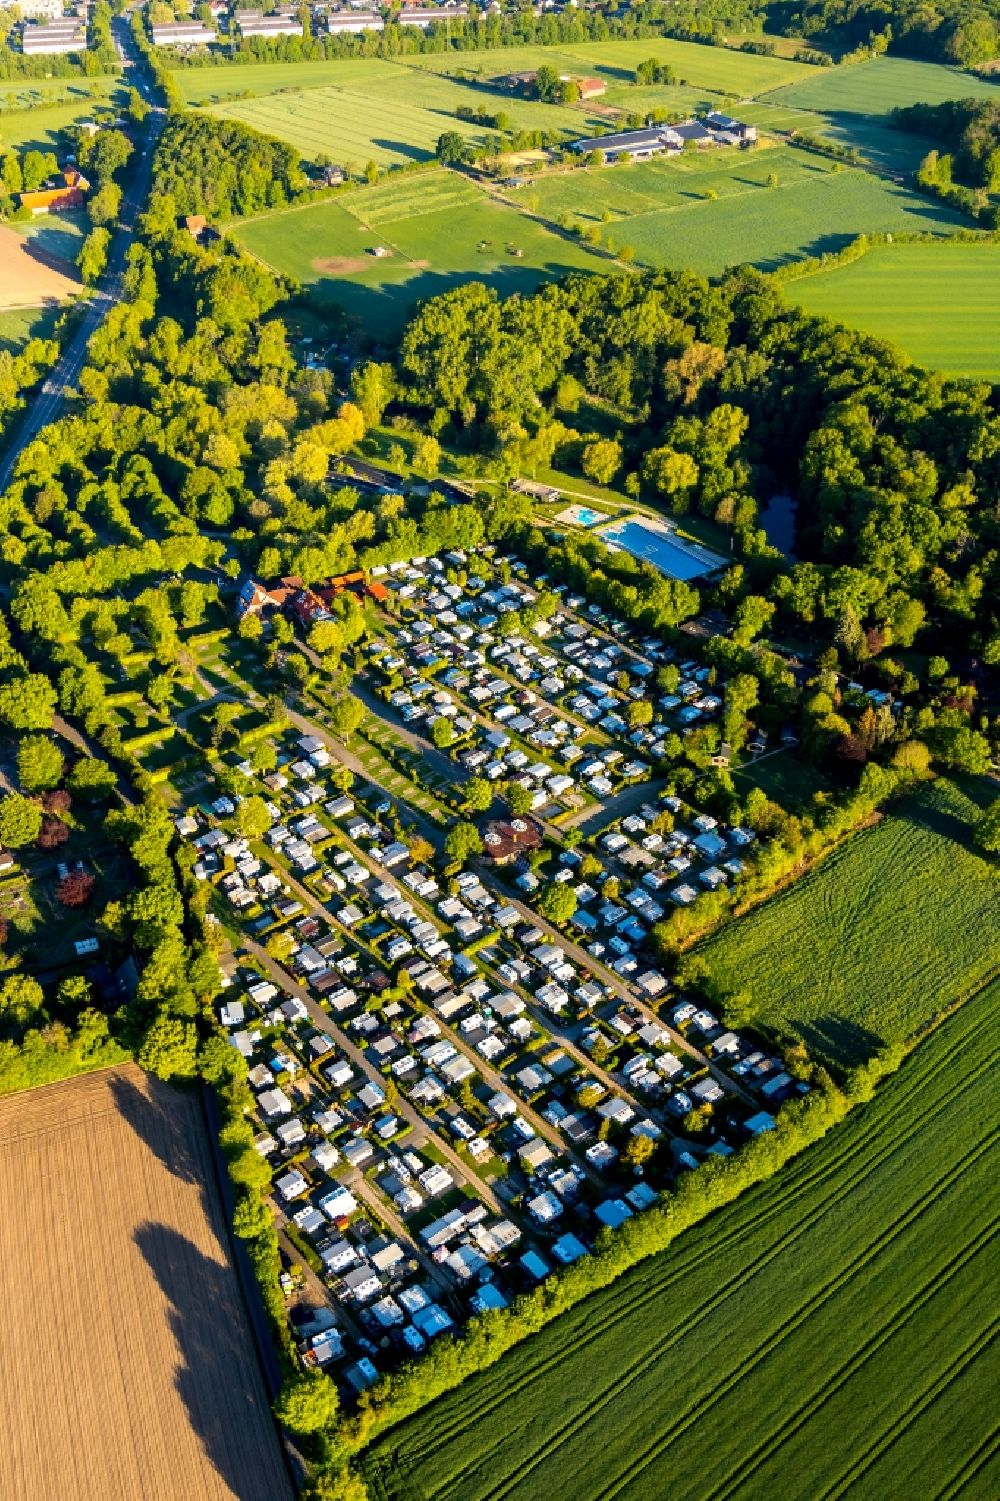 Münster aus der Vogelperspektive: Campingplatz mit Wohnwagen und Zelten in Münster im Bundesland Nordrhein-Westfalen, Deutschland